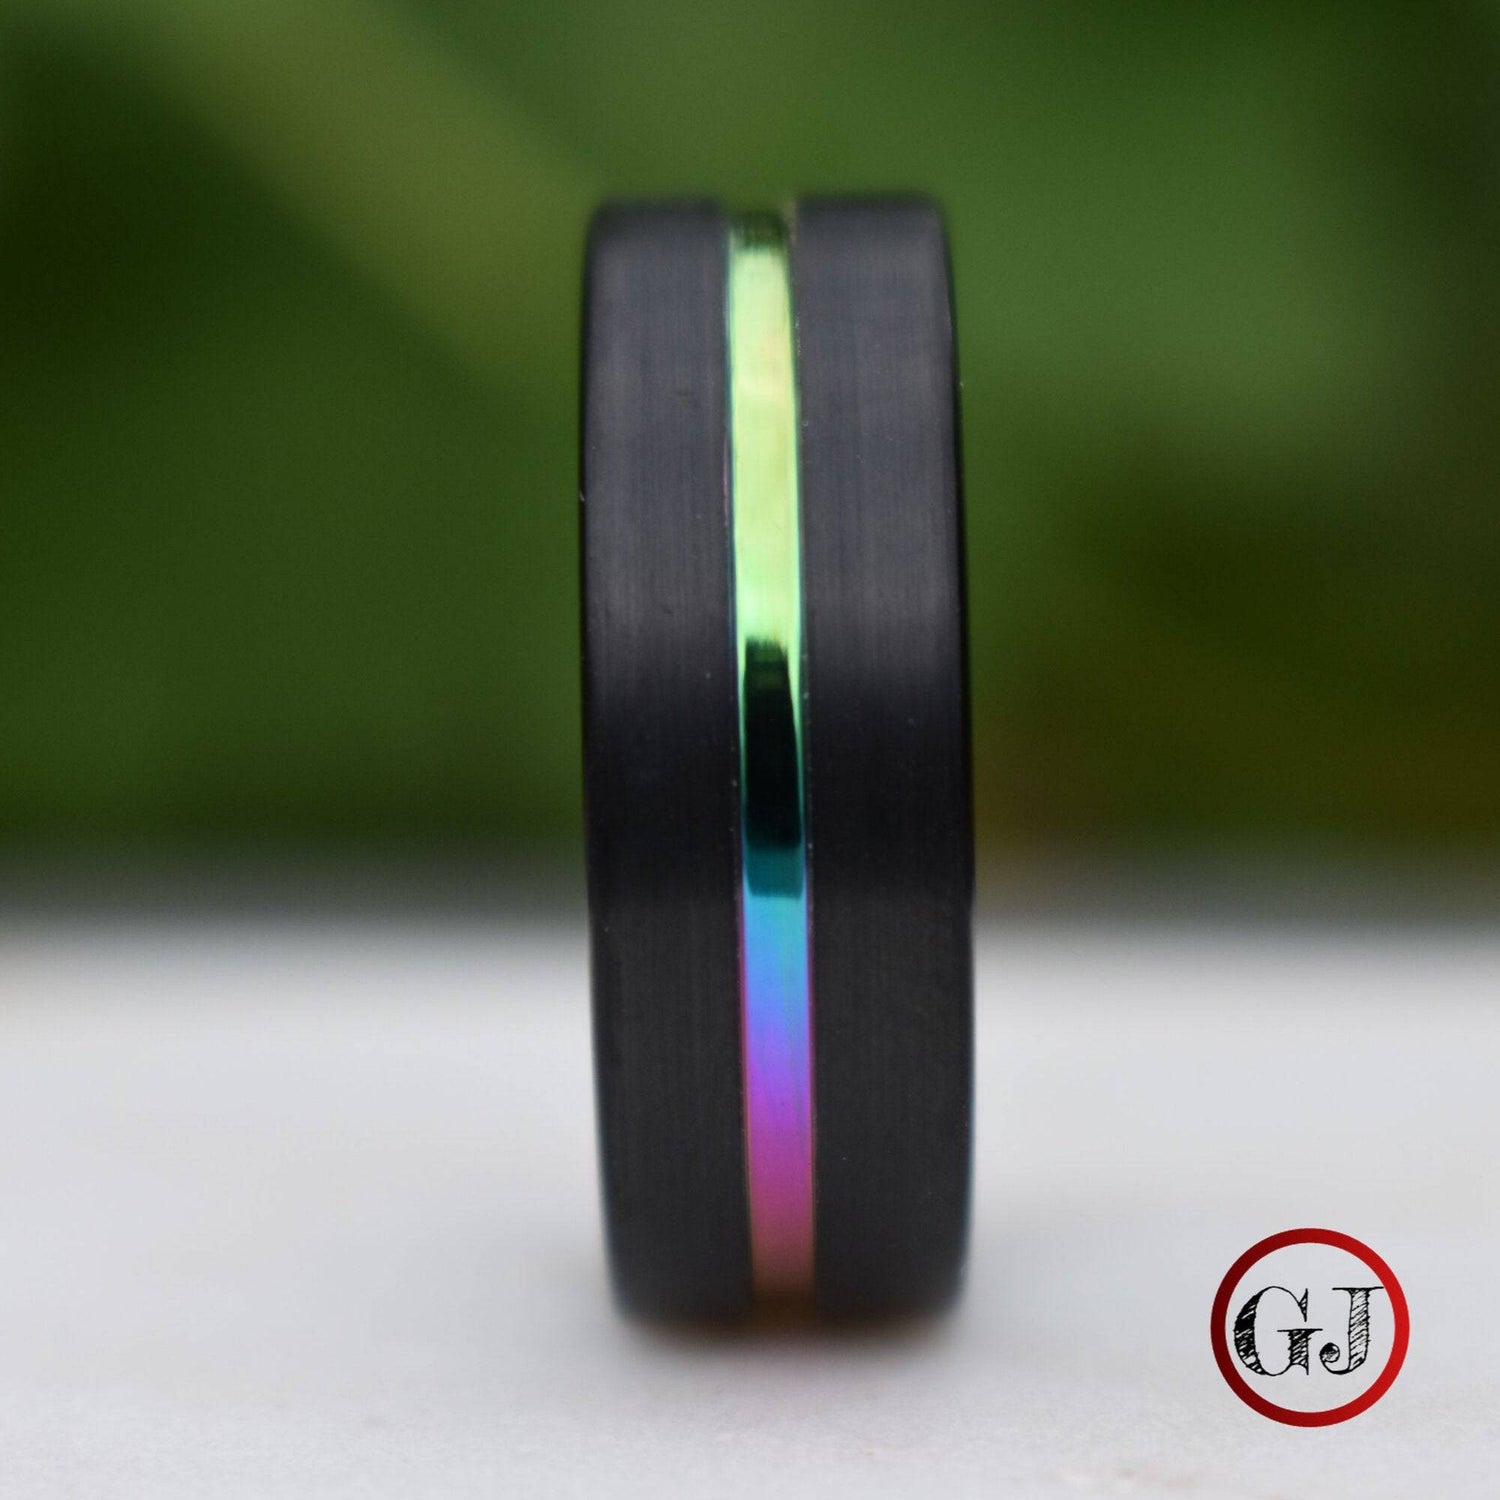 Tungsten 8mm Ring Black with Rainbow Center - Tungsten Titans